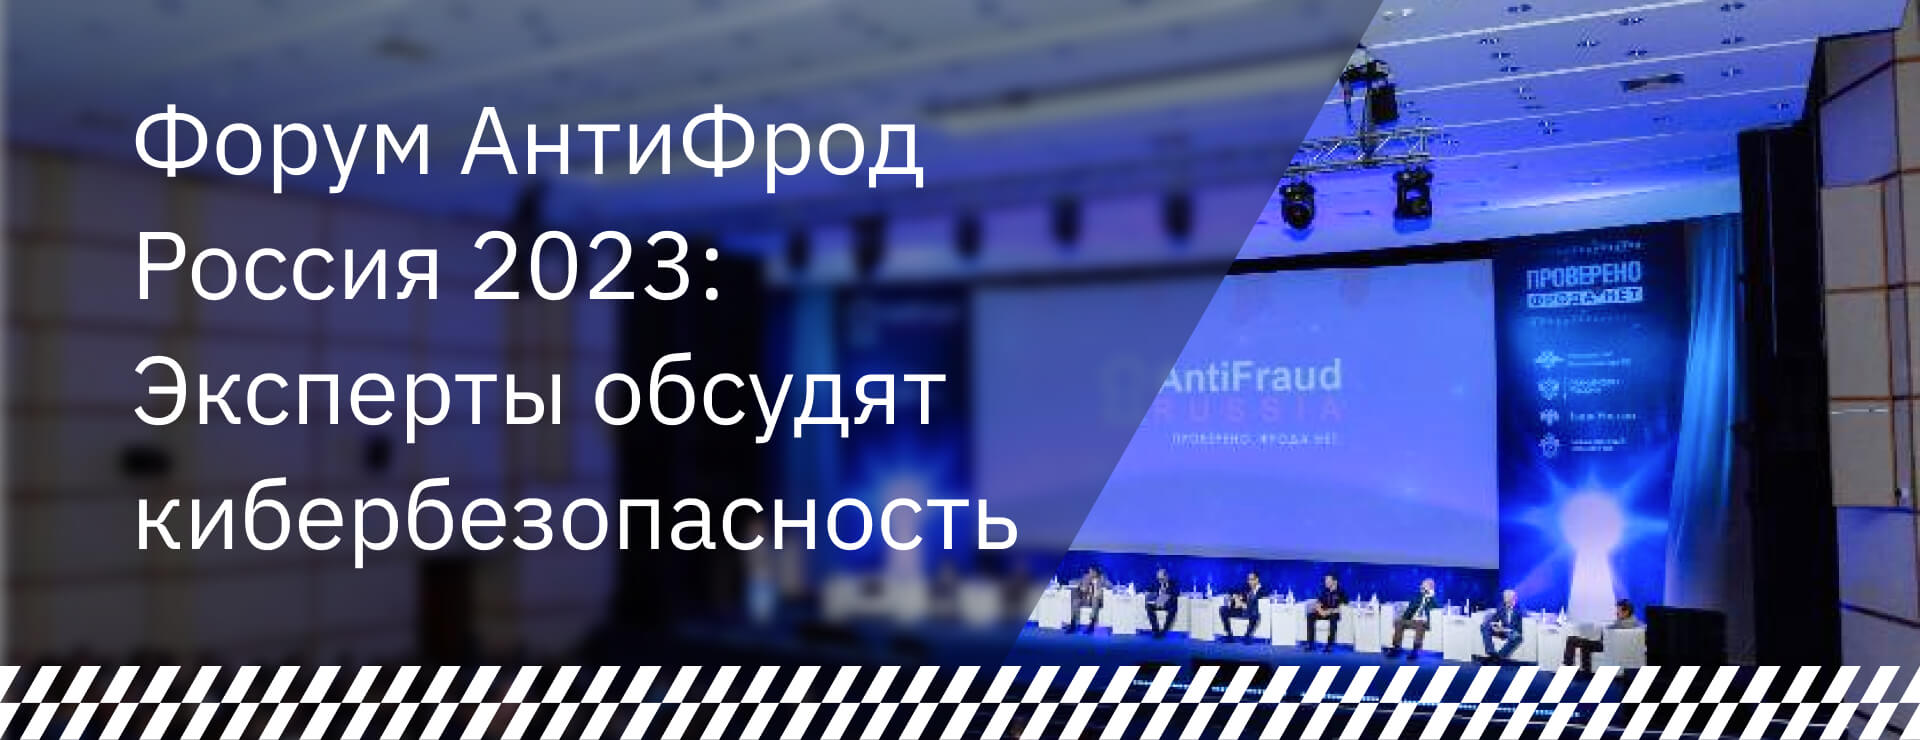 Форум АнтиФрод Россия 2023: эксперты обсудят кибербезопасность